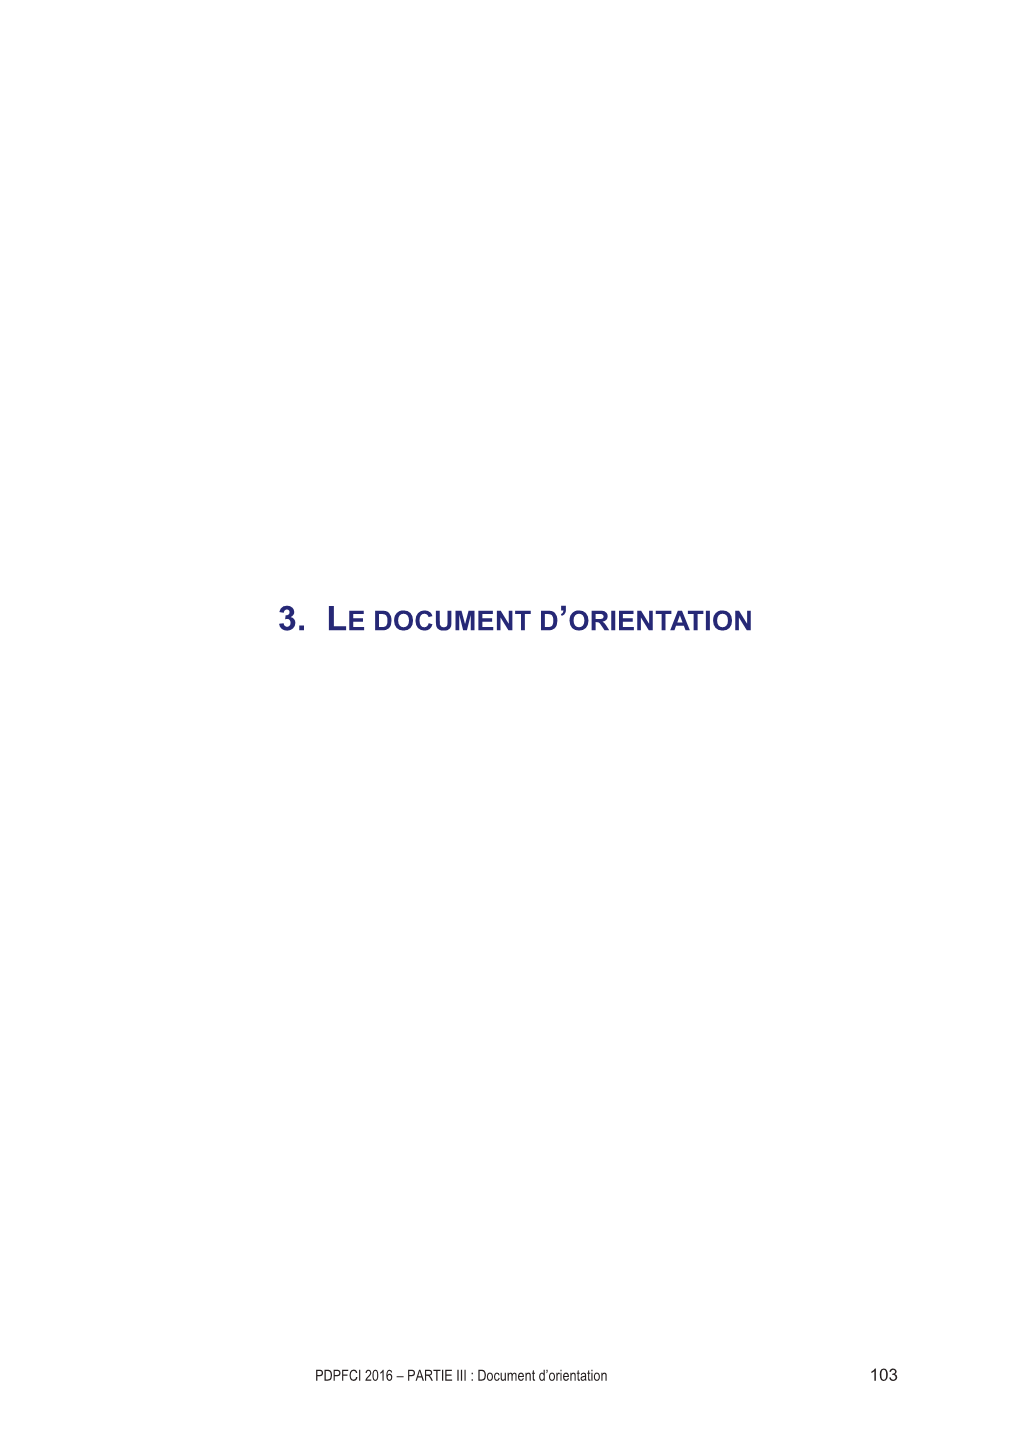 3. Le Document D'orientation